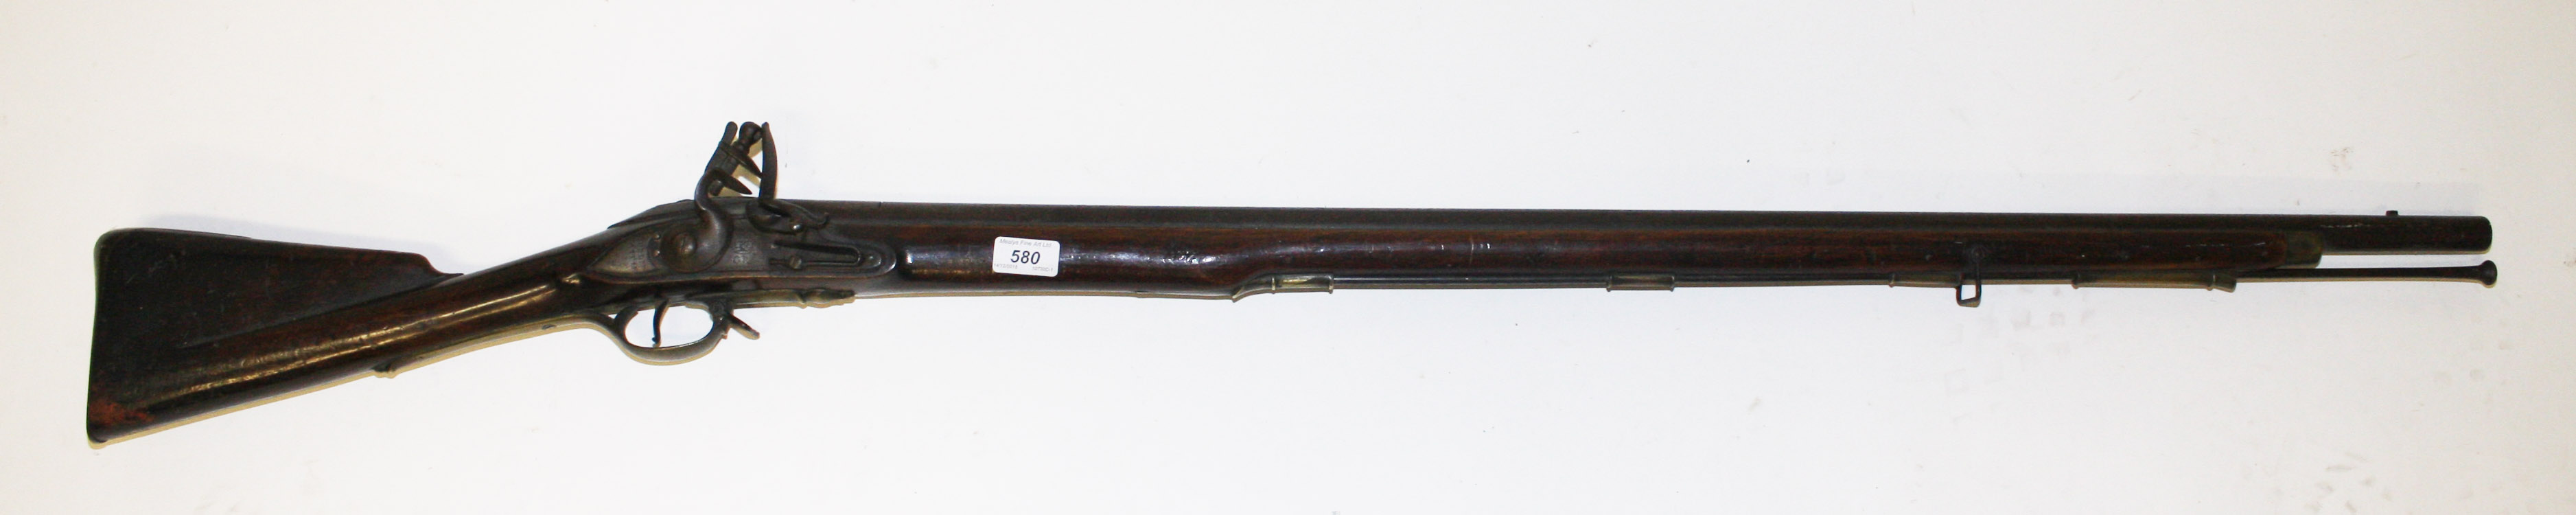 A DUBLIN CASTLE BROWN BESS FLINT LOCK MUSKET, 
with 41in (114cm) barrel,